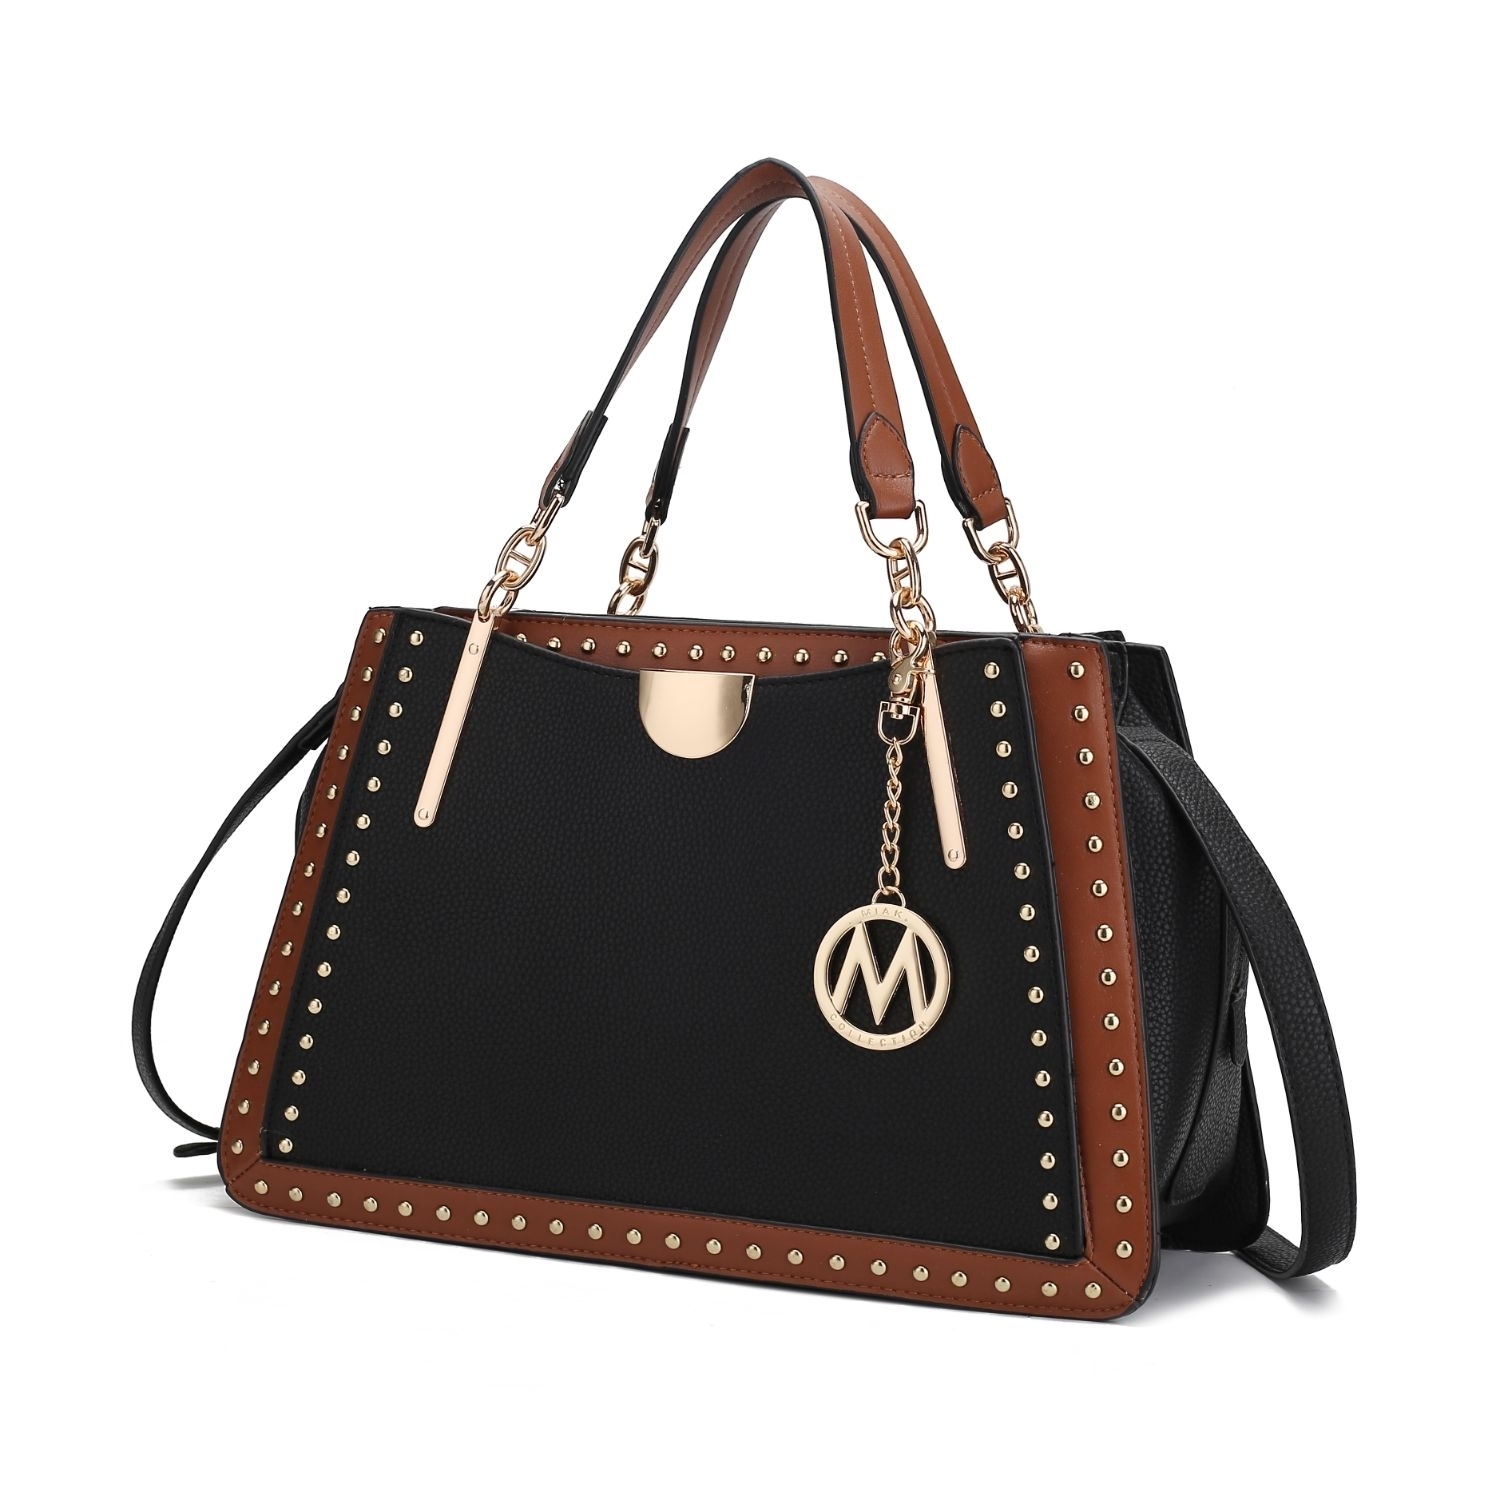 MKF Collection Aubrey Satchel Handbag By Mia K. - Cognac-Black